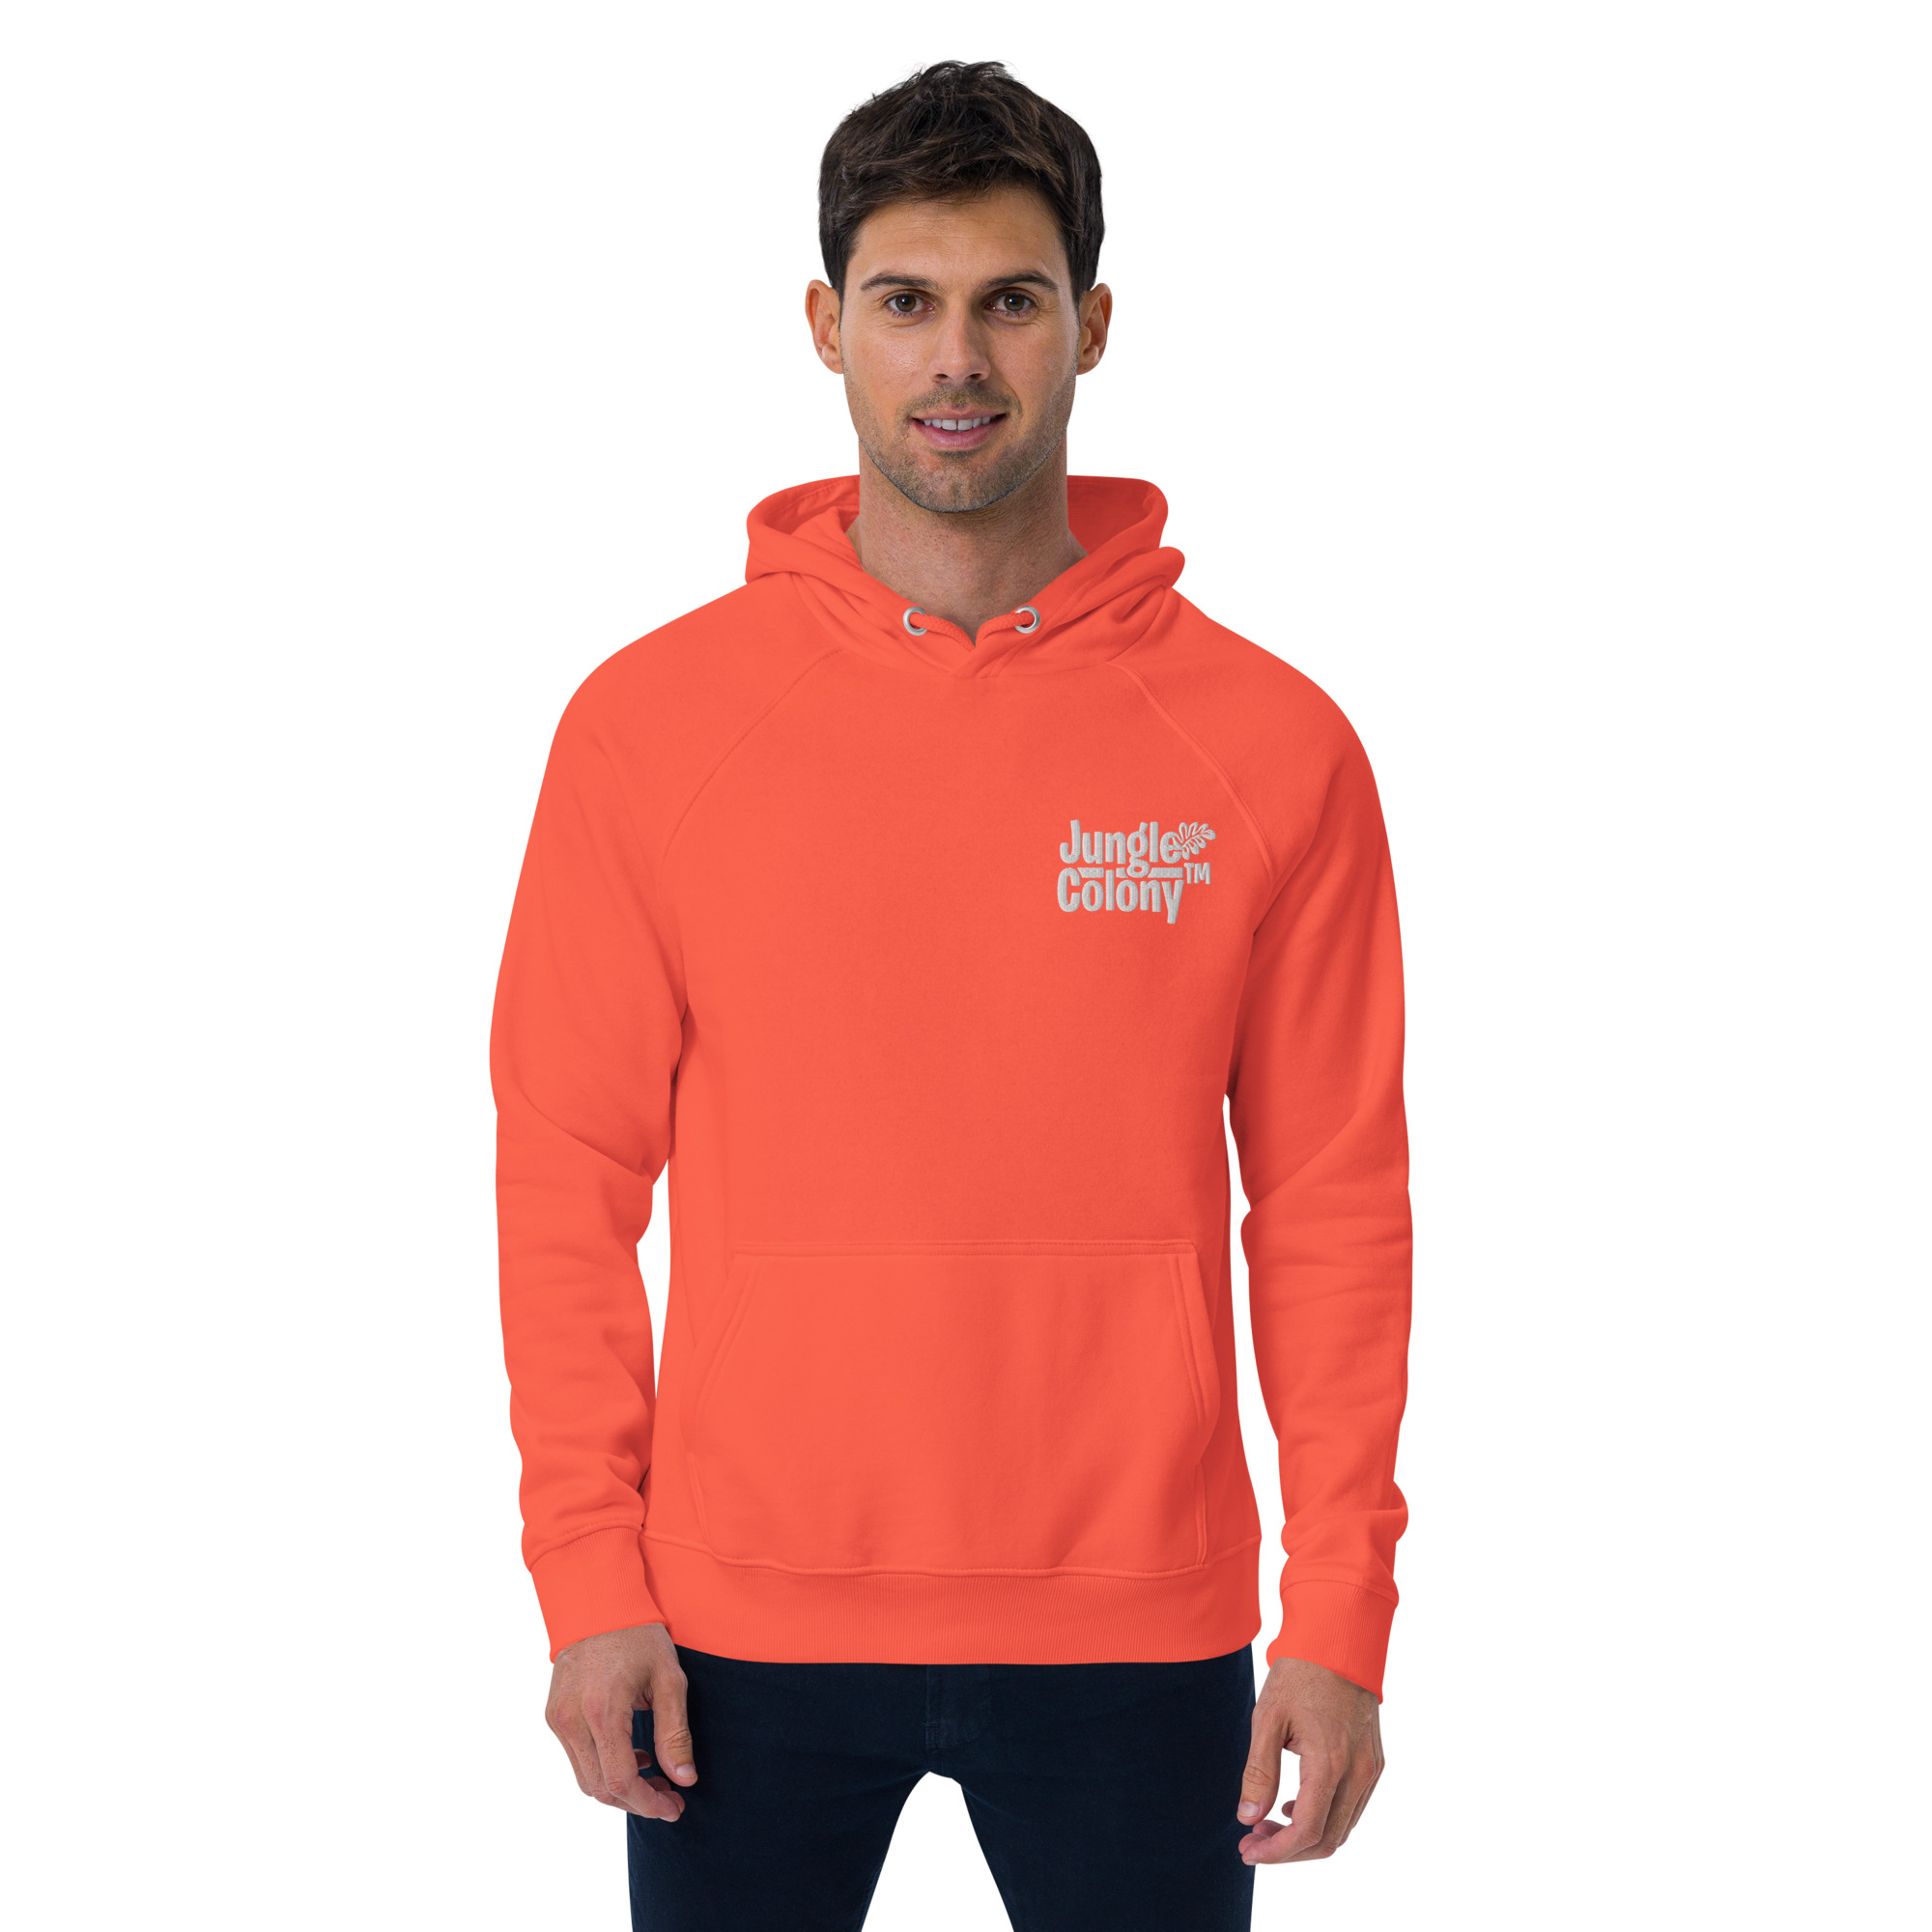 unisex-eco-raglan-hoodie-burnt-orange-front-6420086c88ed0.jpg